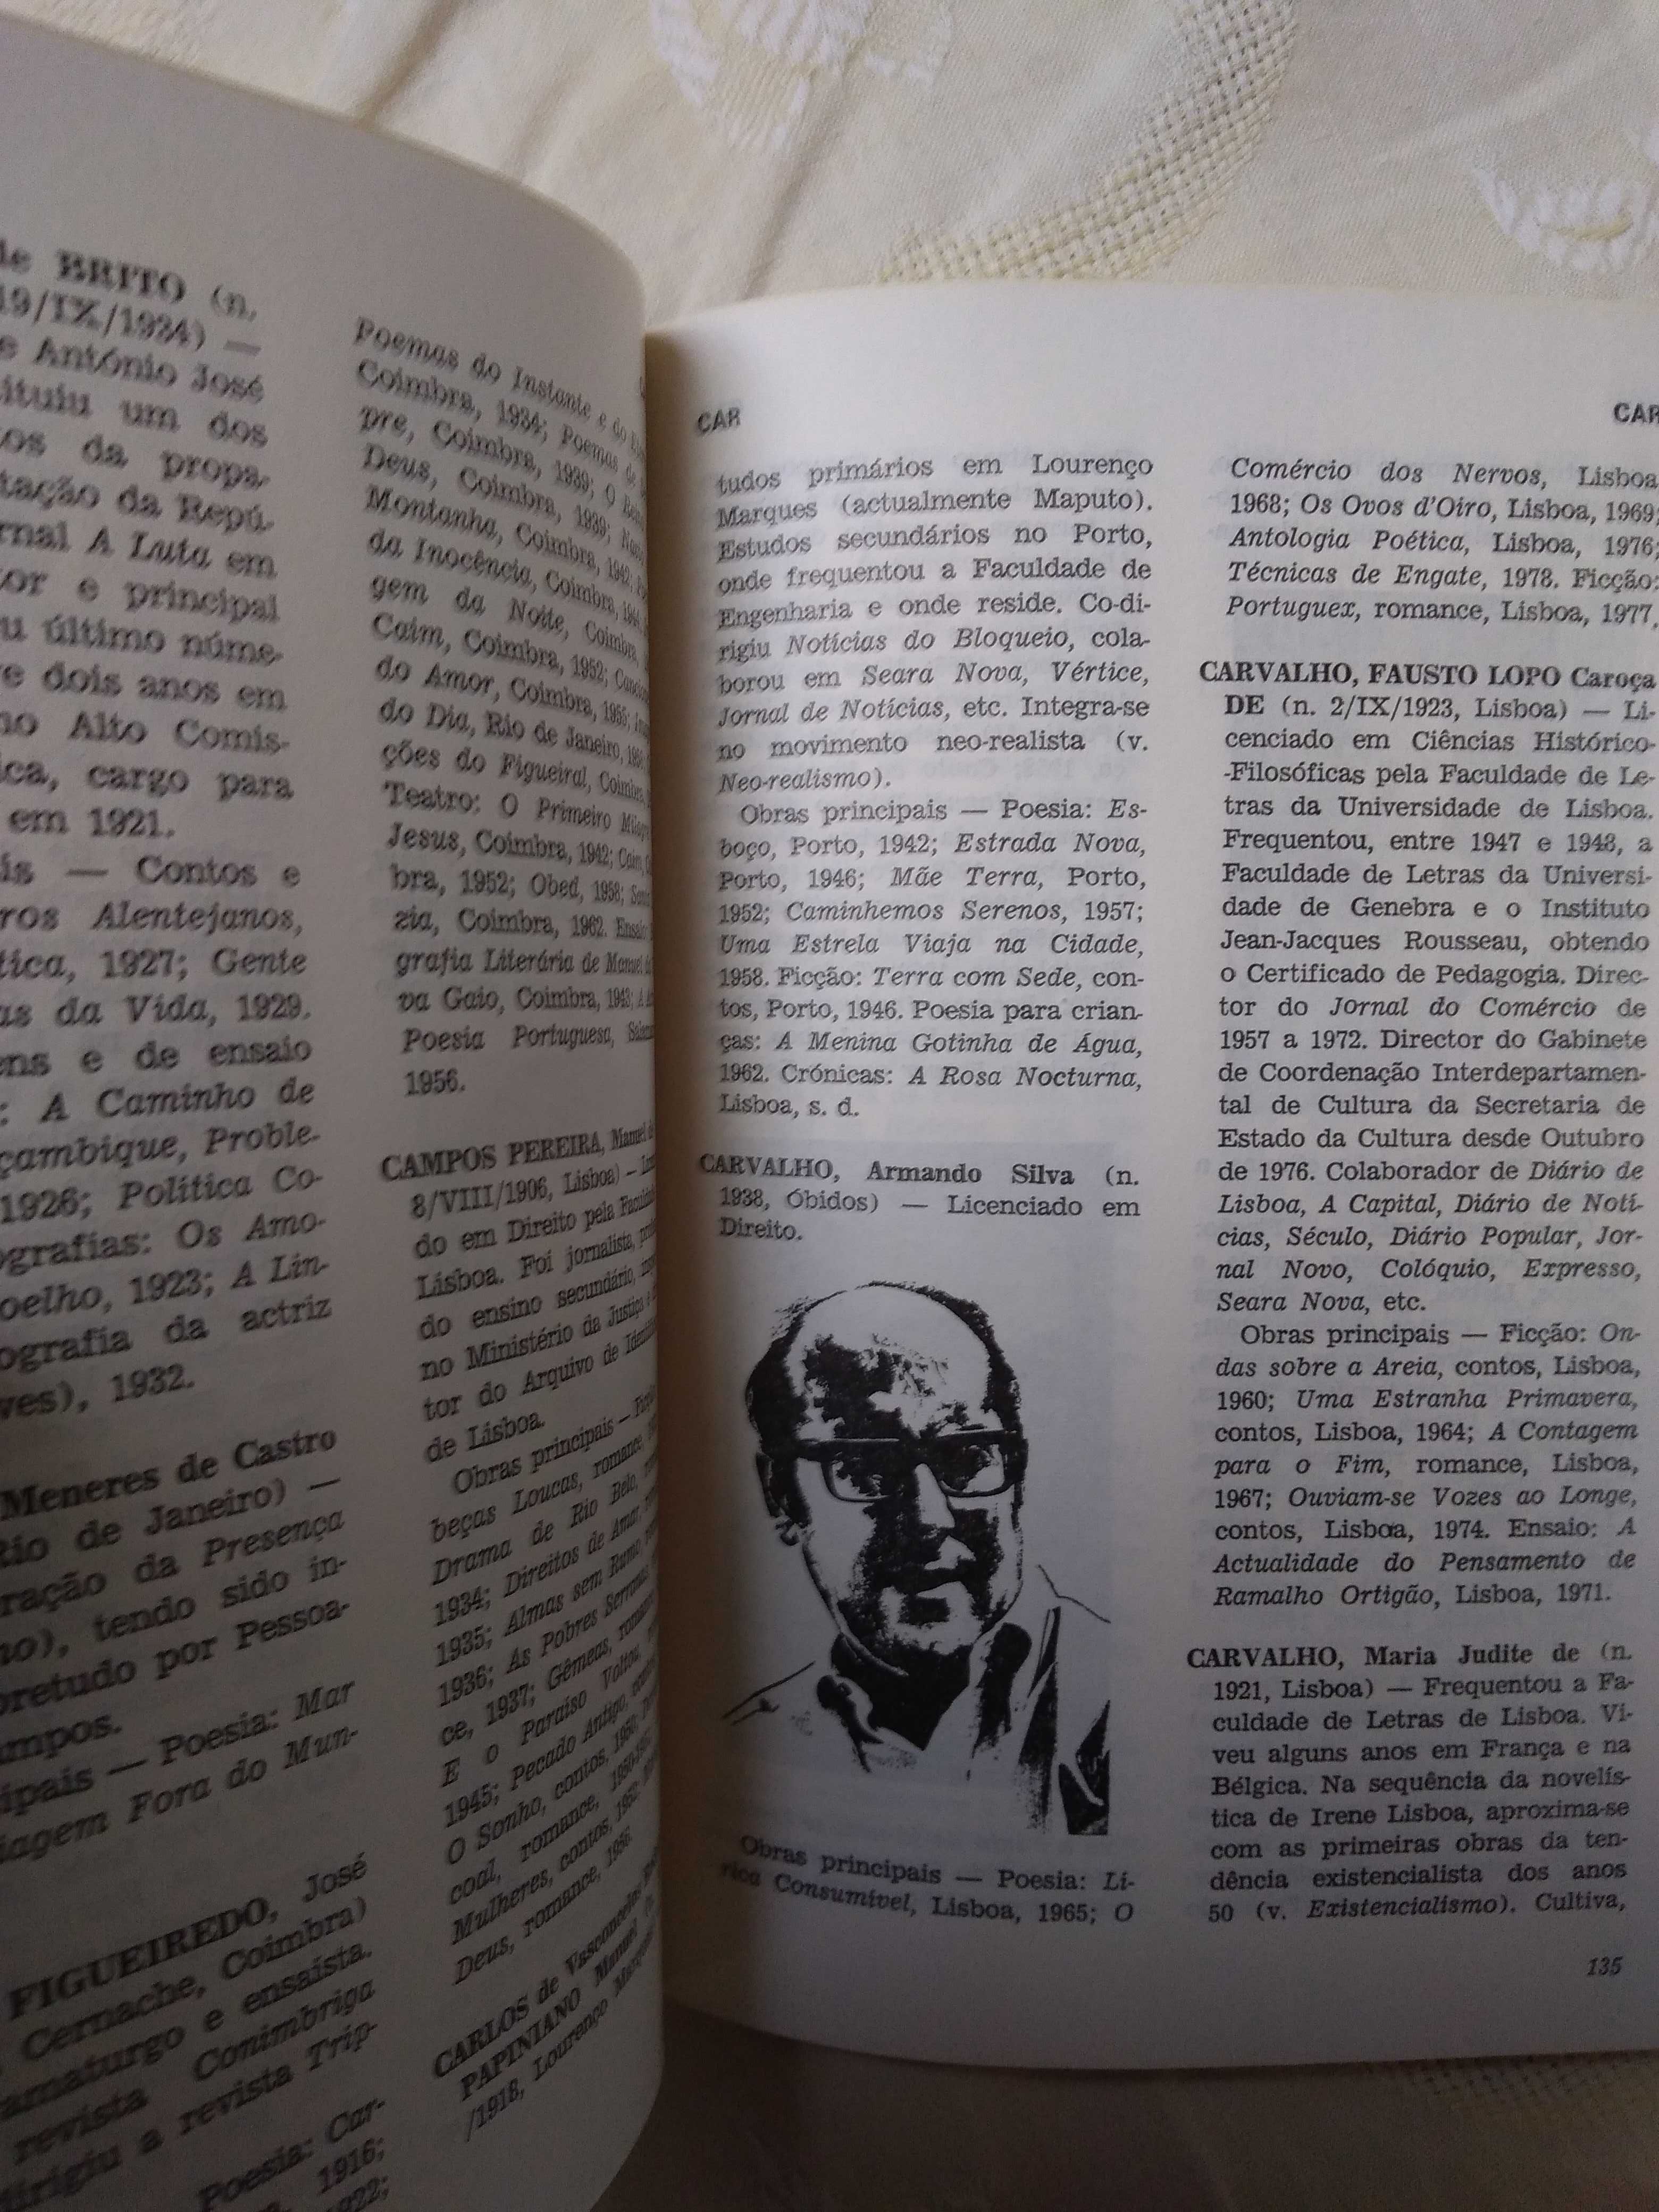 Quem é Quem na Literatura Portuguesa, Álvaro Manuel Machado